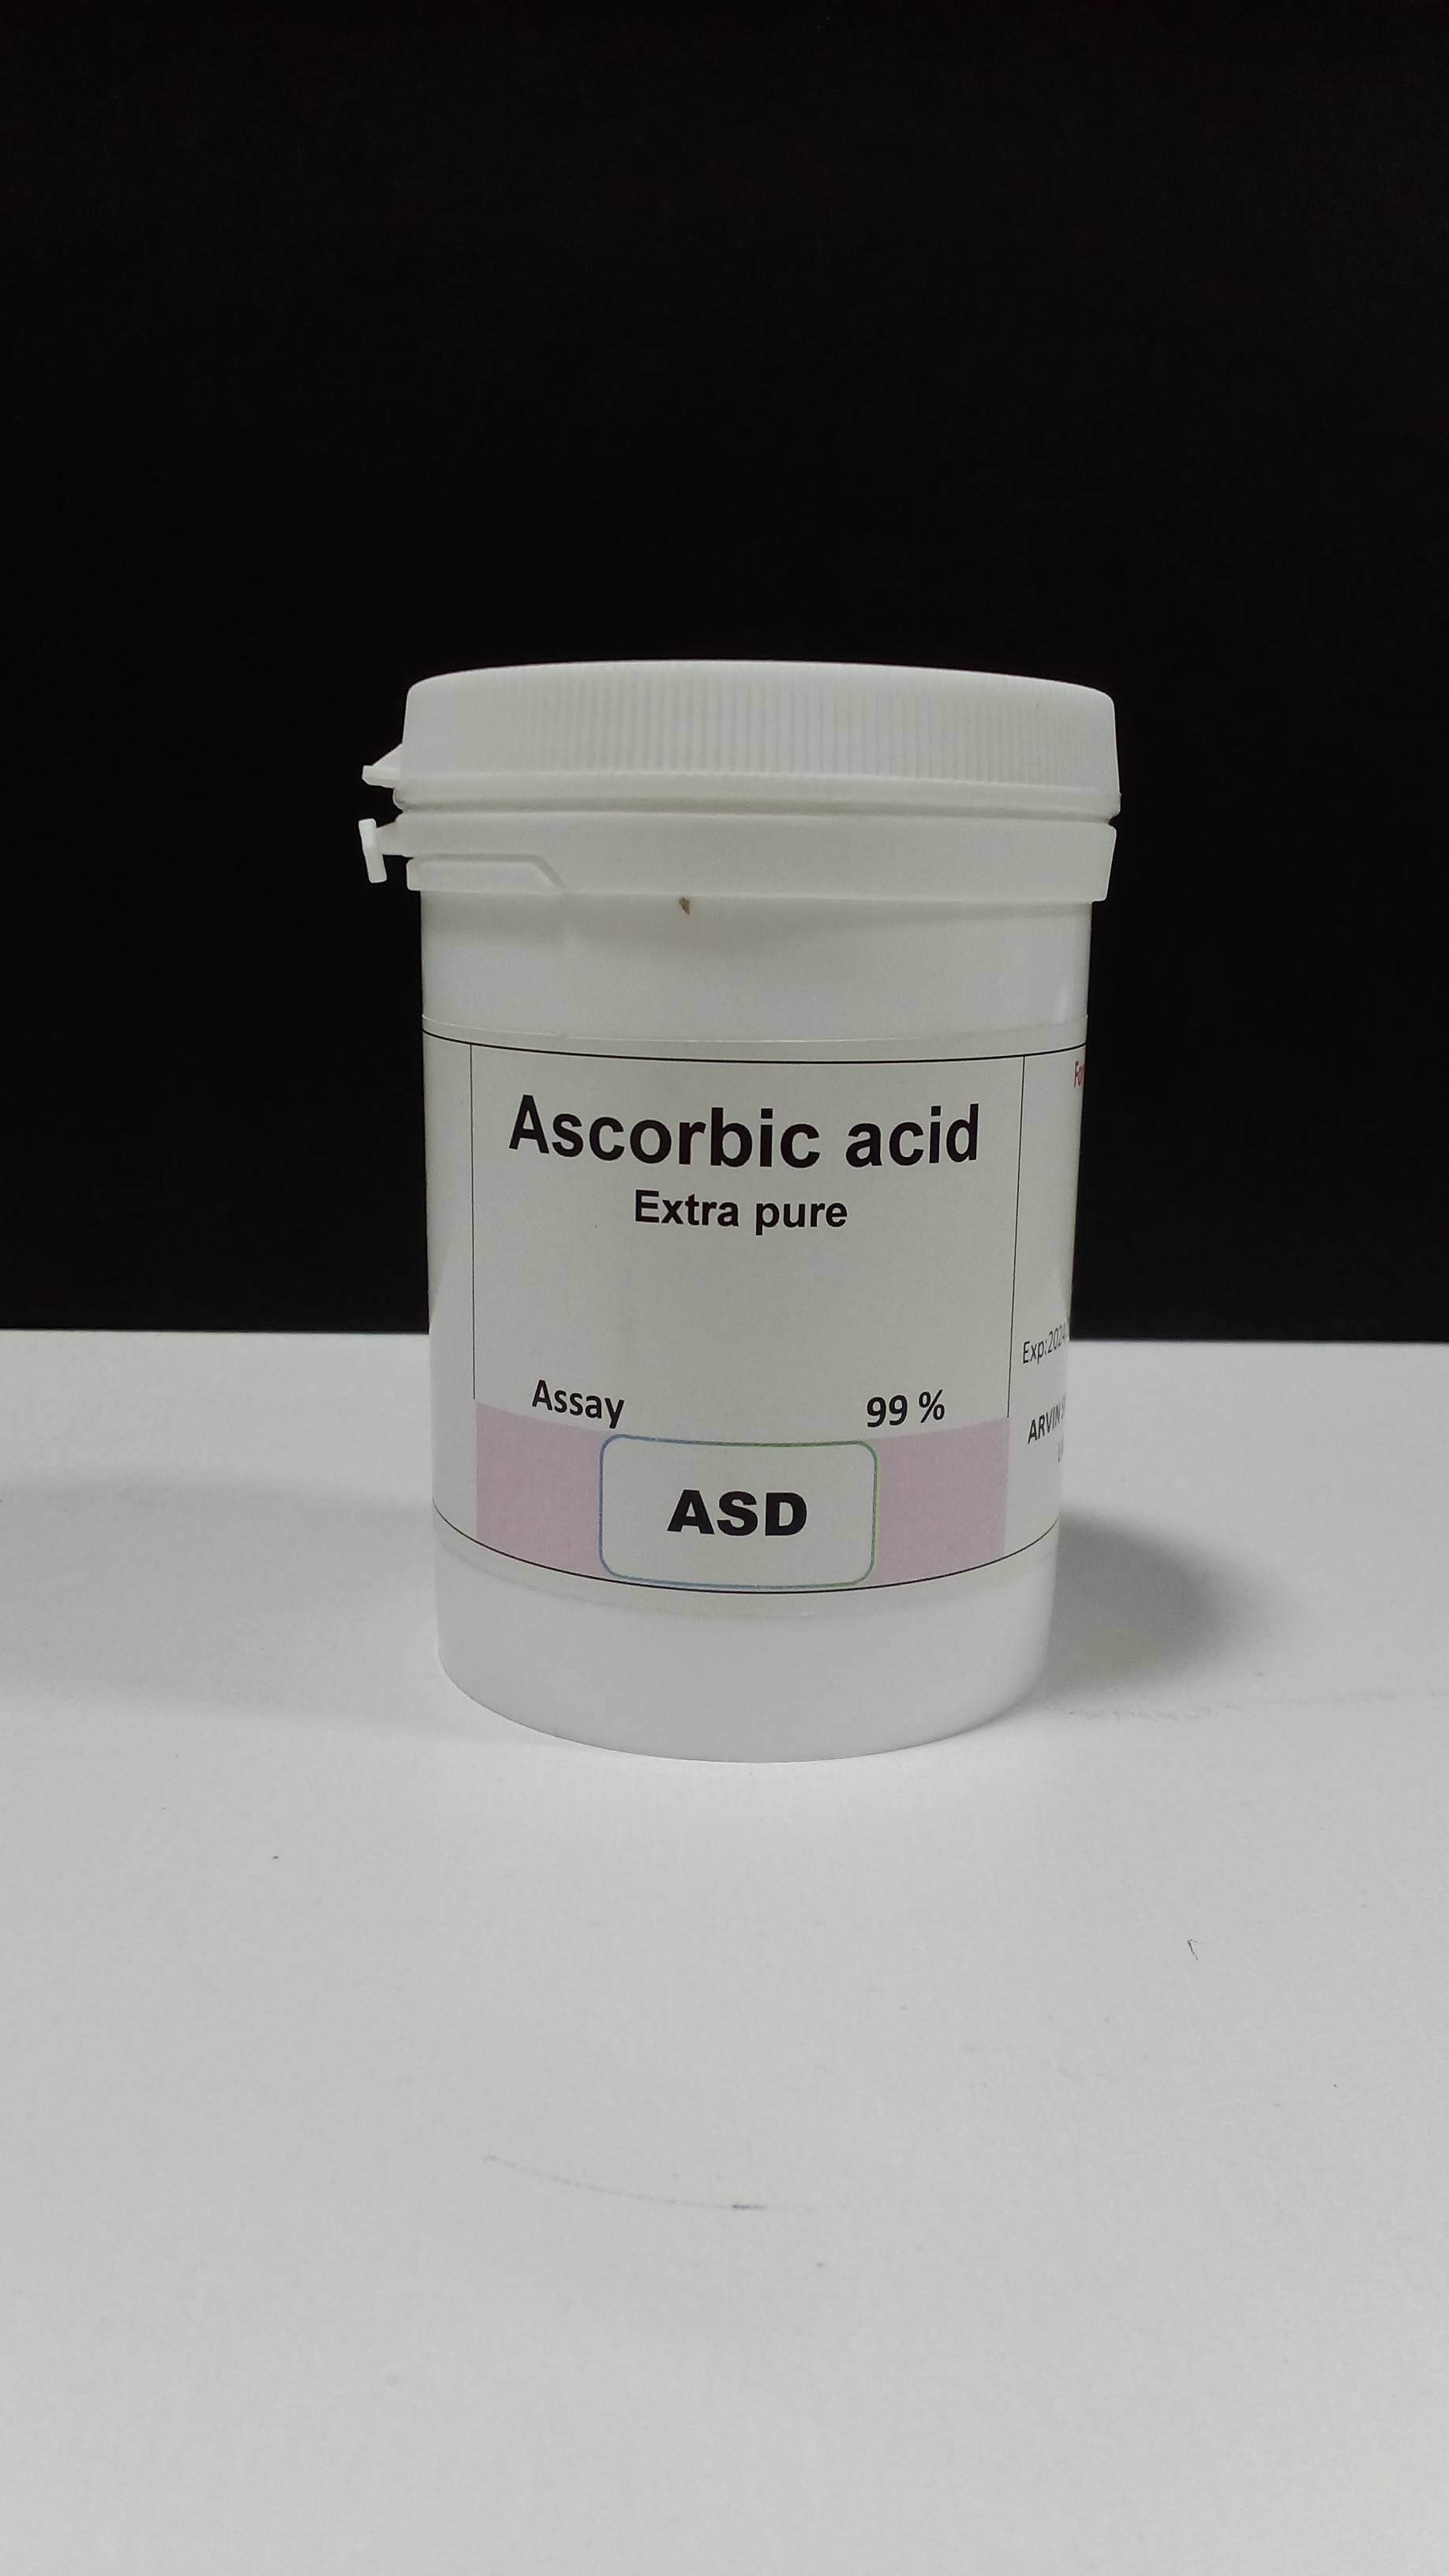 آسکوربیک اسید 100 گرم ASD